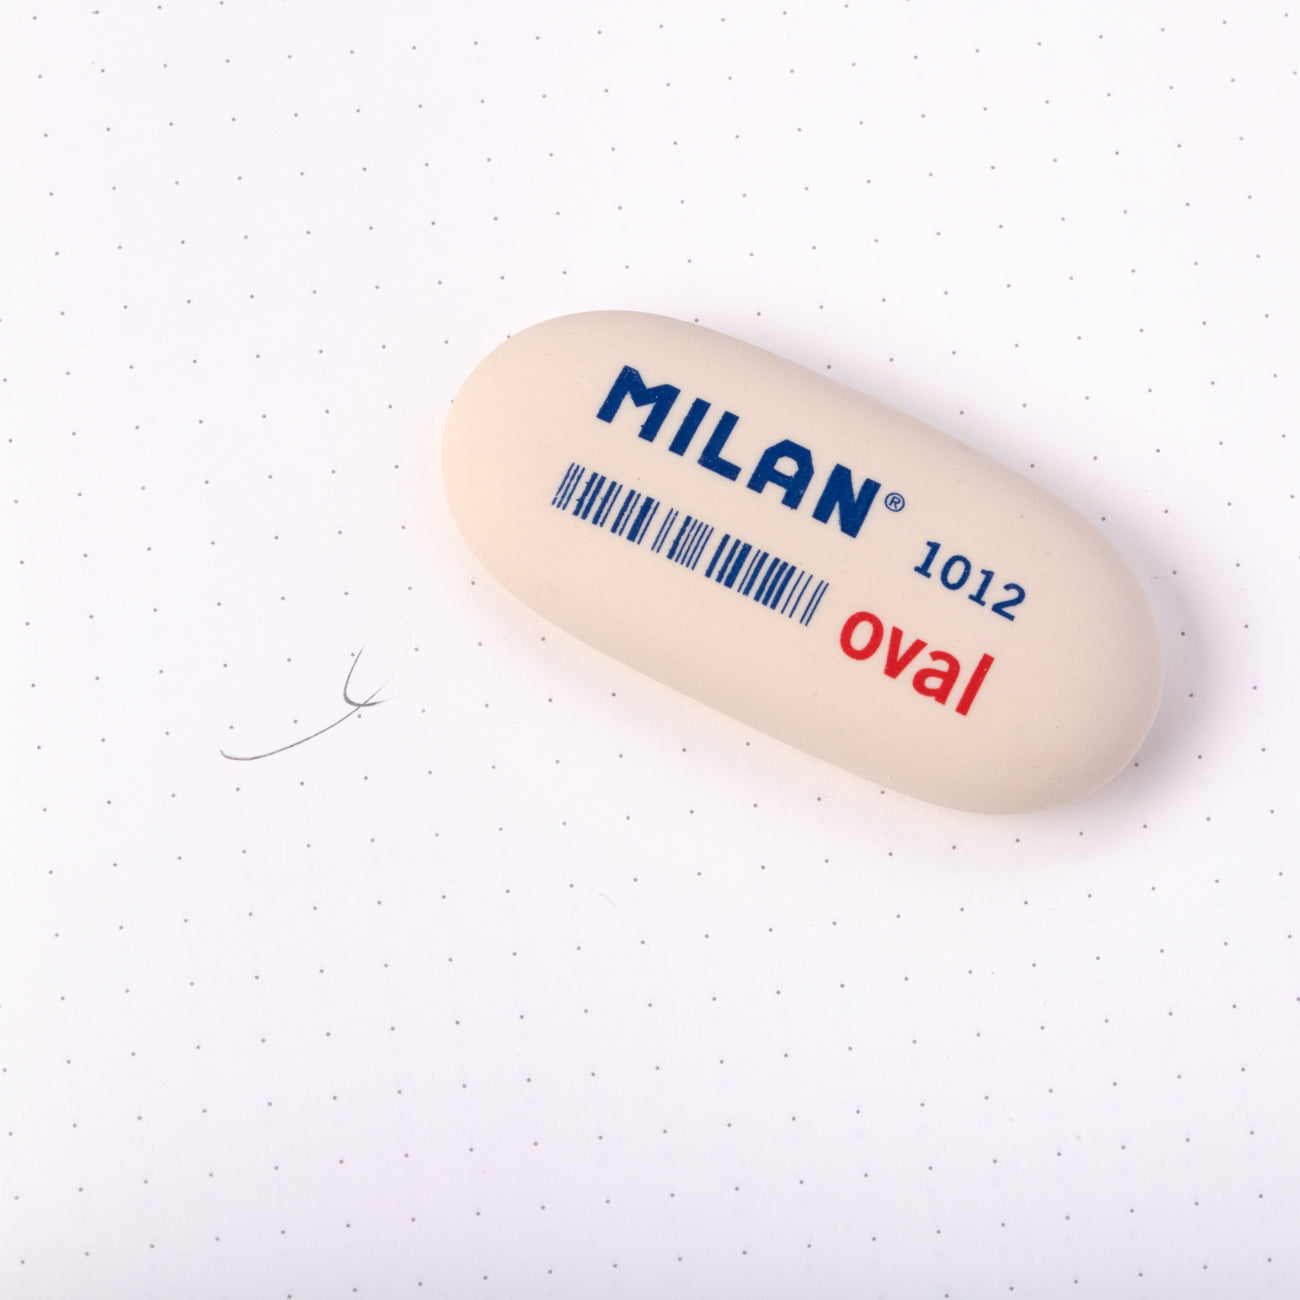 Milan Oval Eraser - 1012